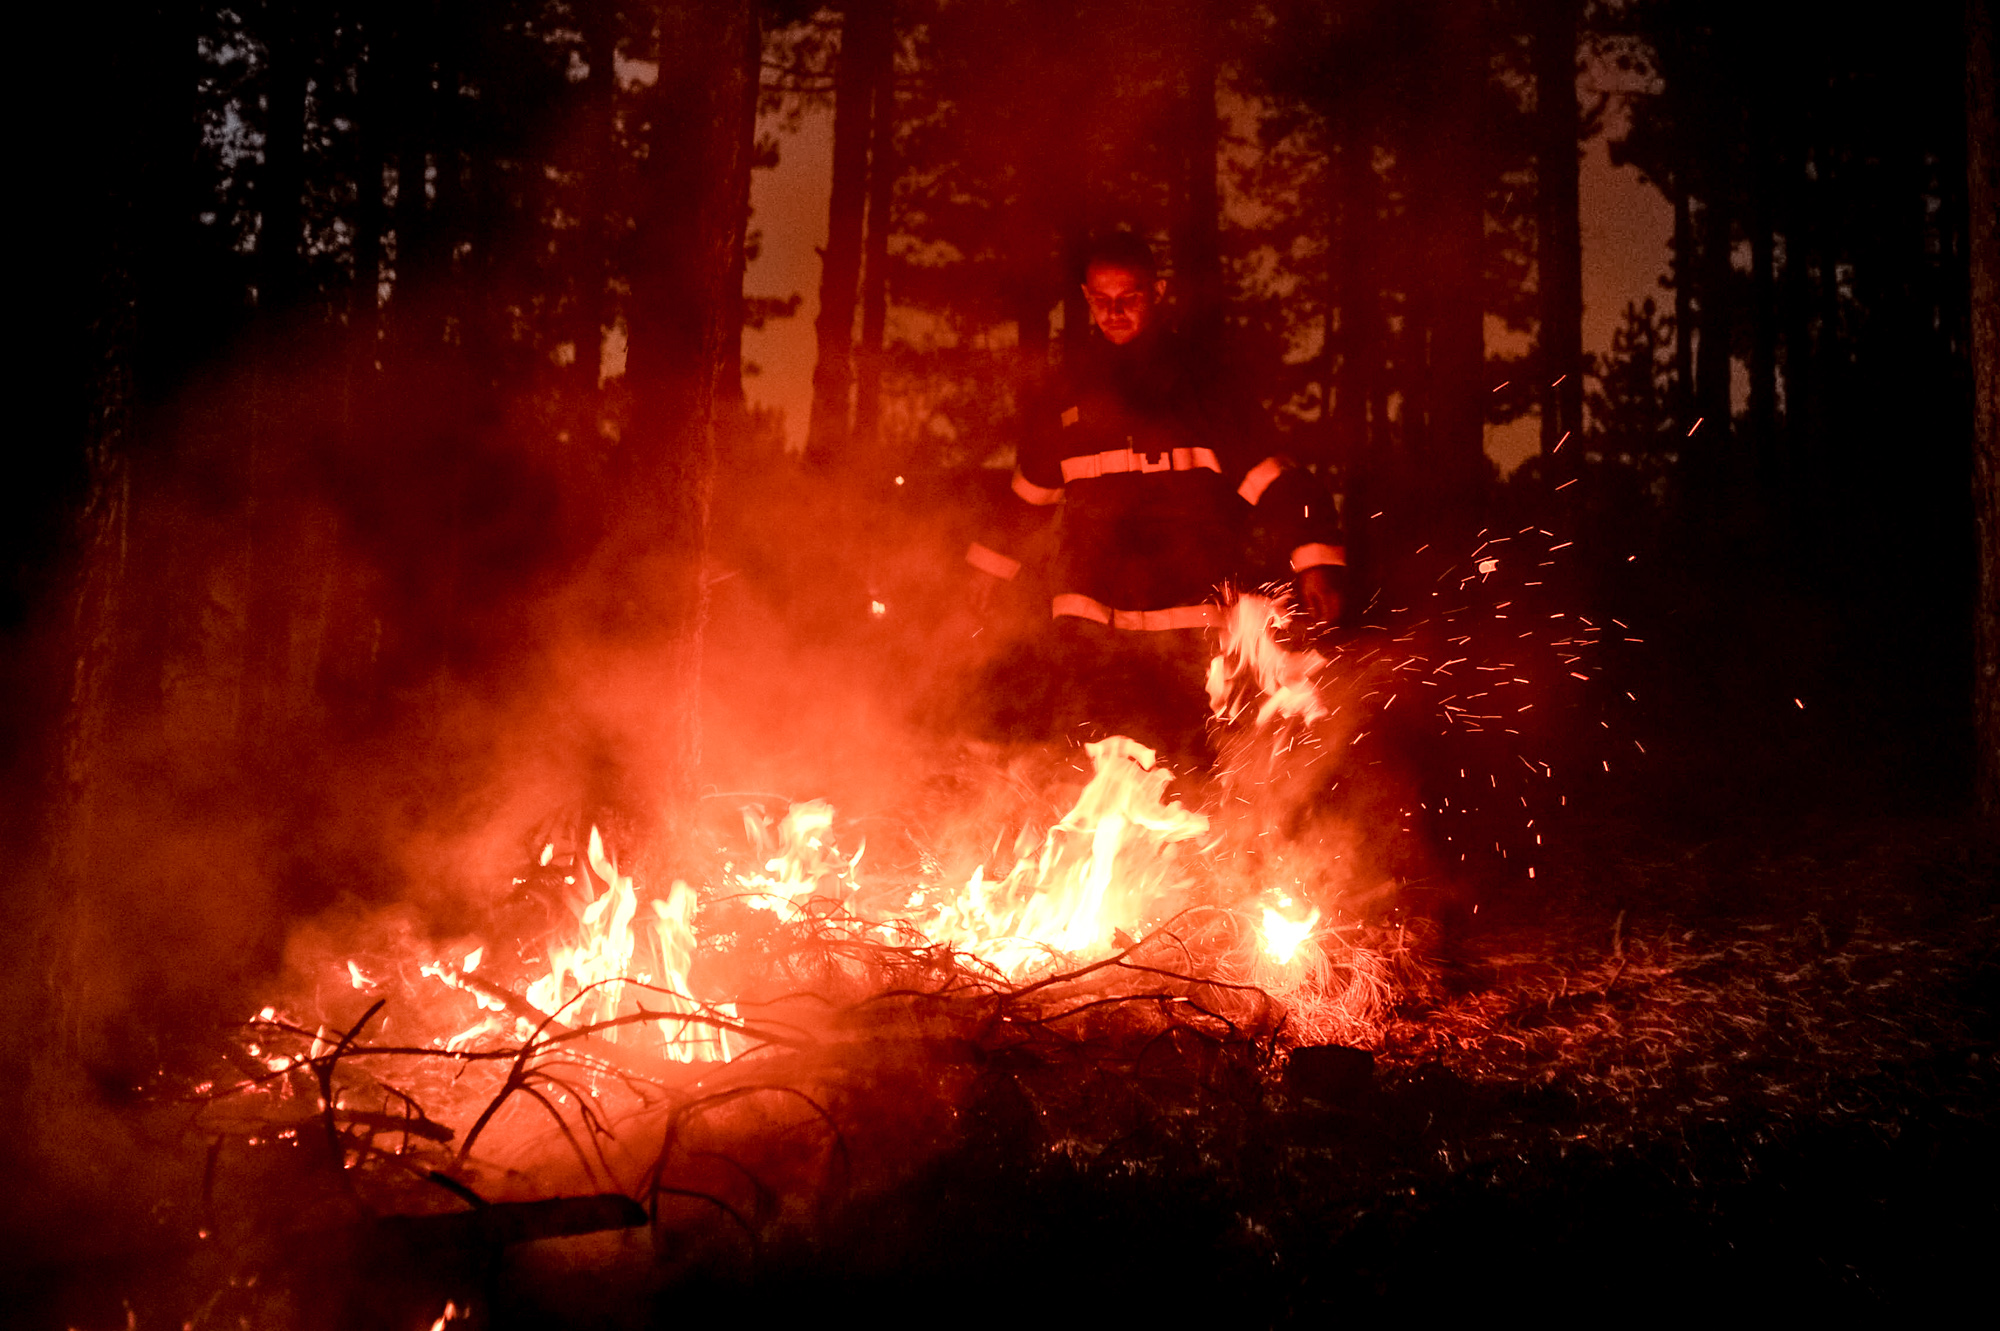 Близо 16 000 дка изгорели гора, треви и храсти, между 12 и 15 милиона лева ще струва възстановяването на гората и 50 години време, за да изглежда както до обедните часове в четвъртък, когато пламна пожарът в Кресненското дефиле. Това е равносметката на четвъртия ден от борбата със стихията. Два вертолета на армията помагат в гасенето, както и стотици пожарникари, военни, доброволци.